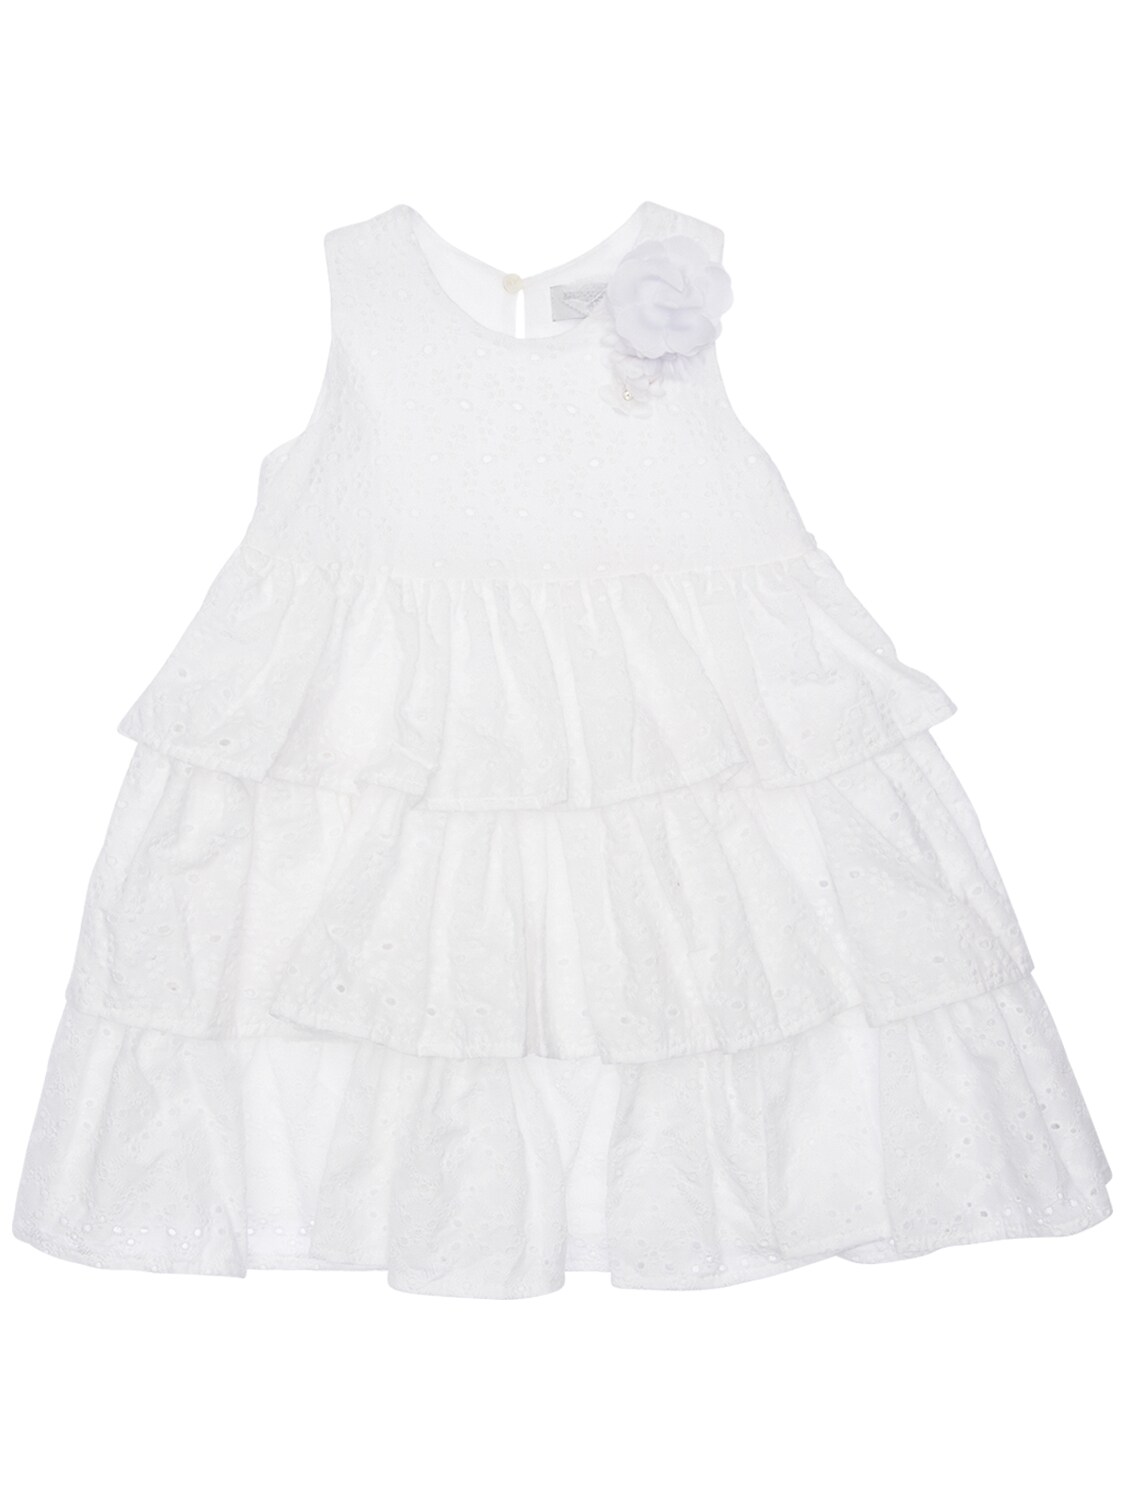 Monnalisa Kids' Eyelet Lace Dress In White